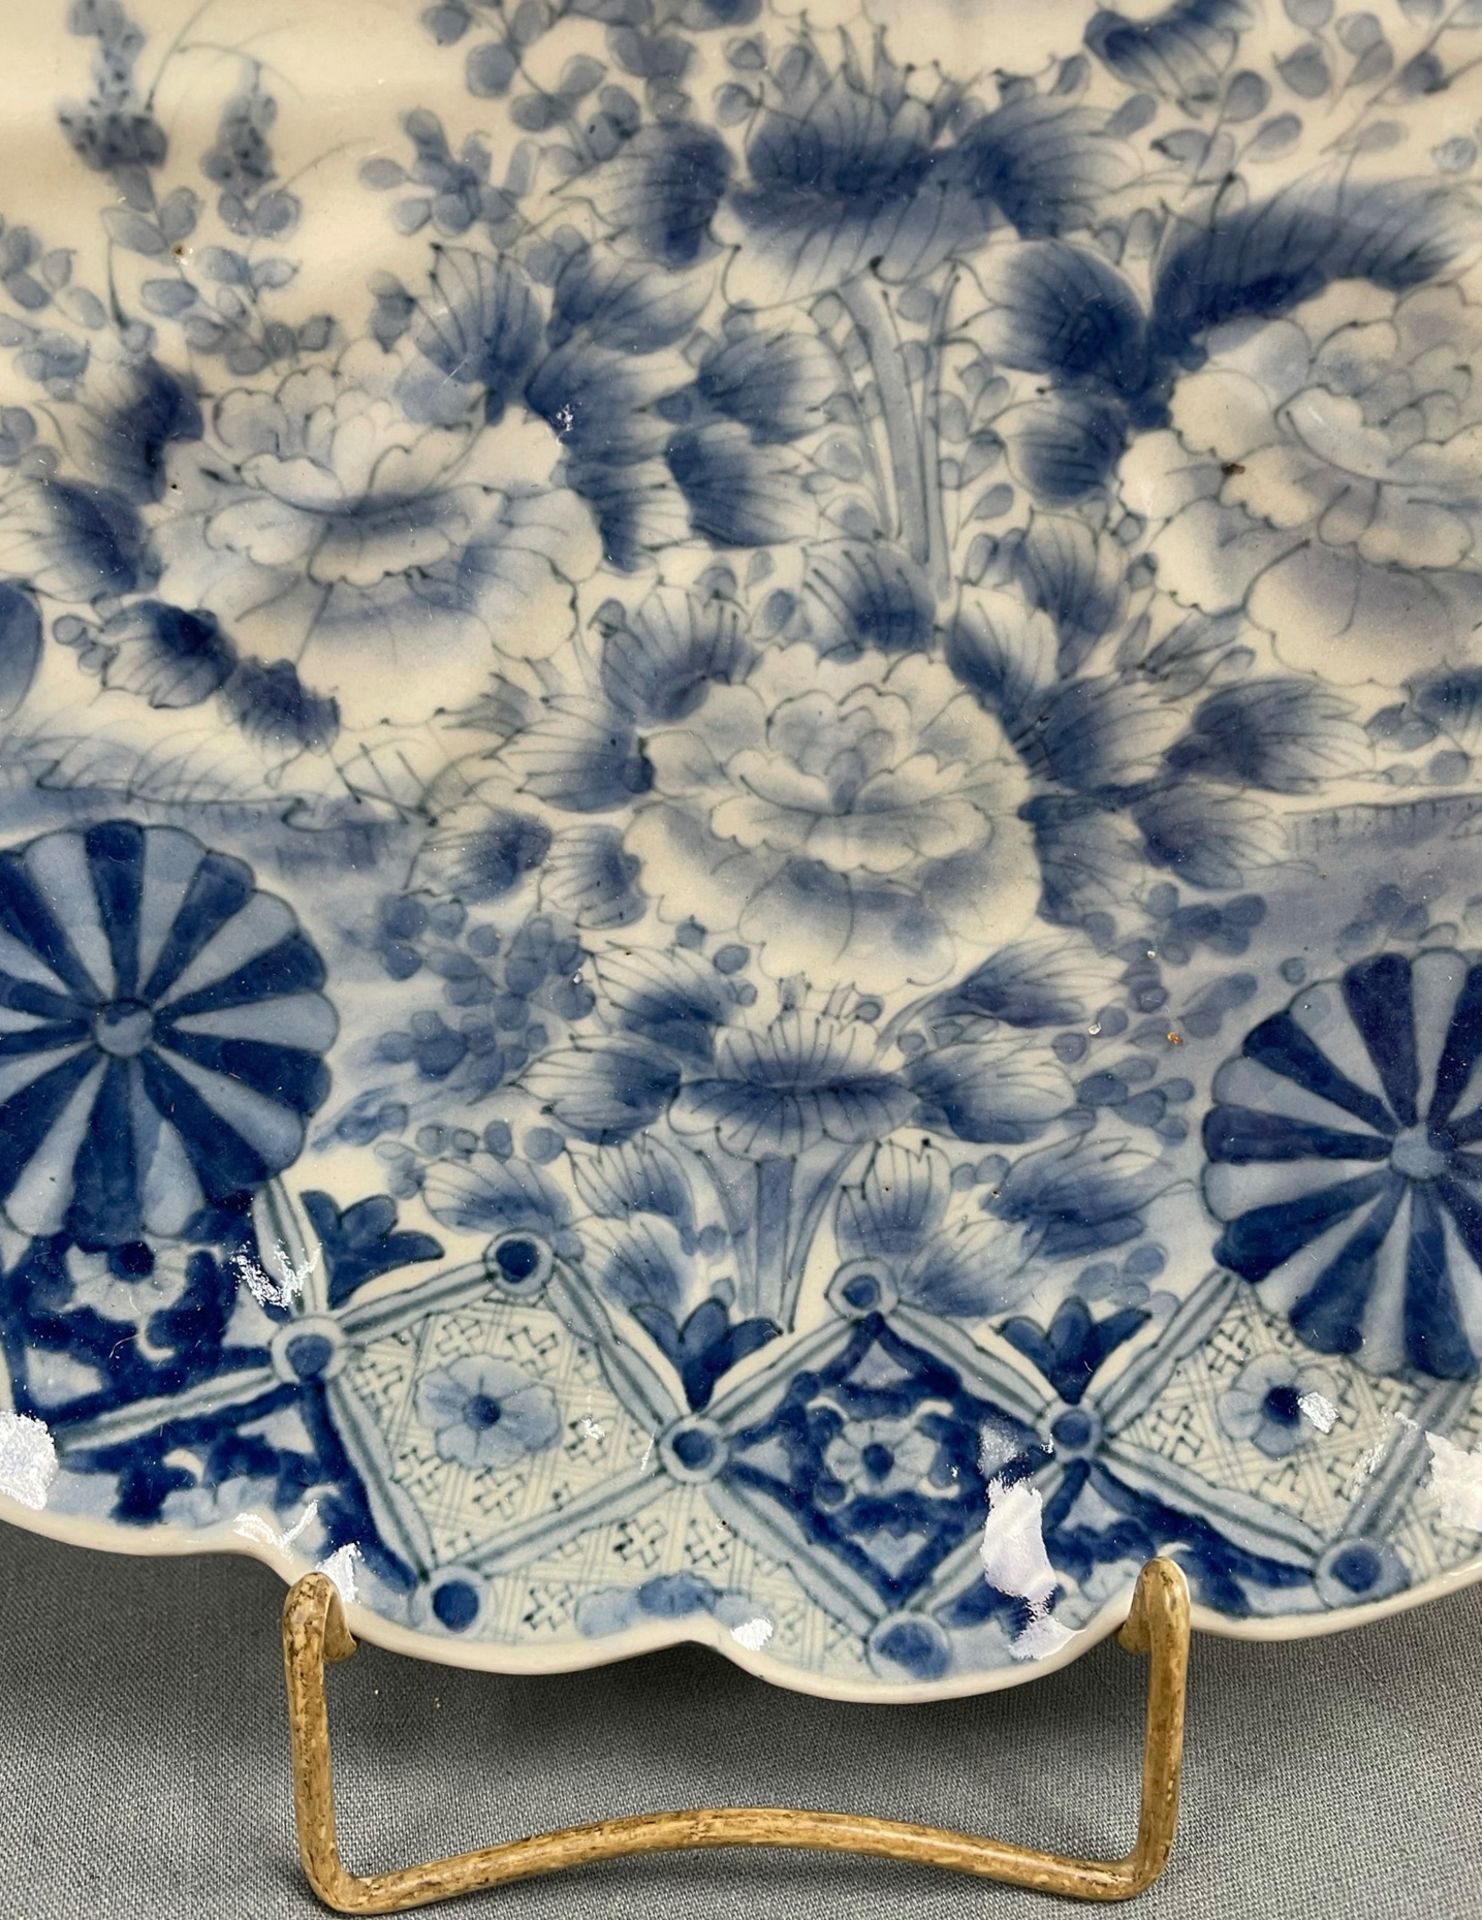 2 Platten Porzellan. Wohl China antik. - Image 9 of 16